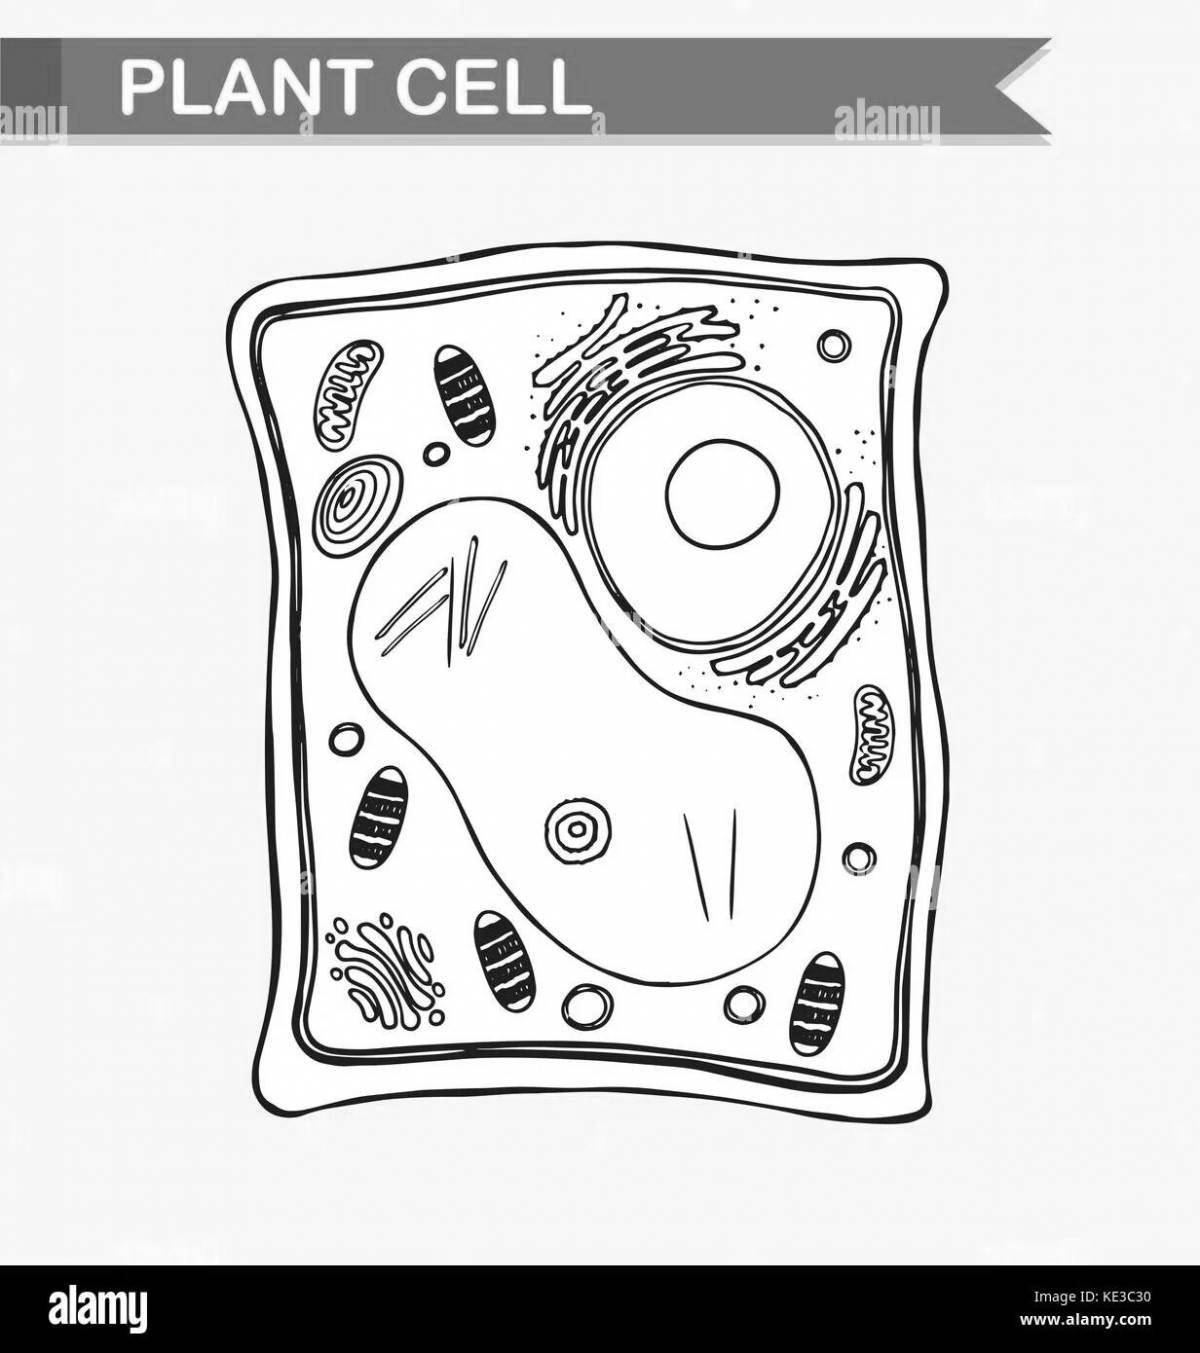 Привлекательная раскраска клеток растений